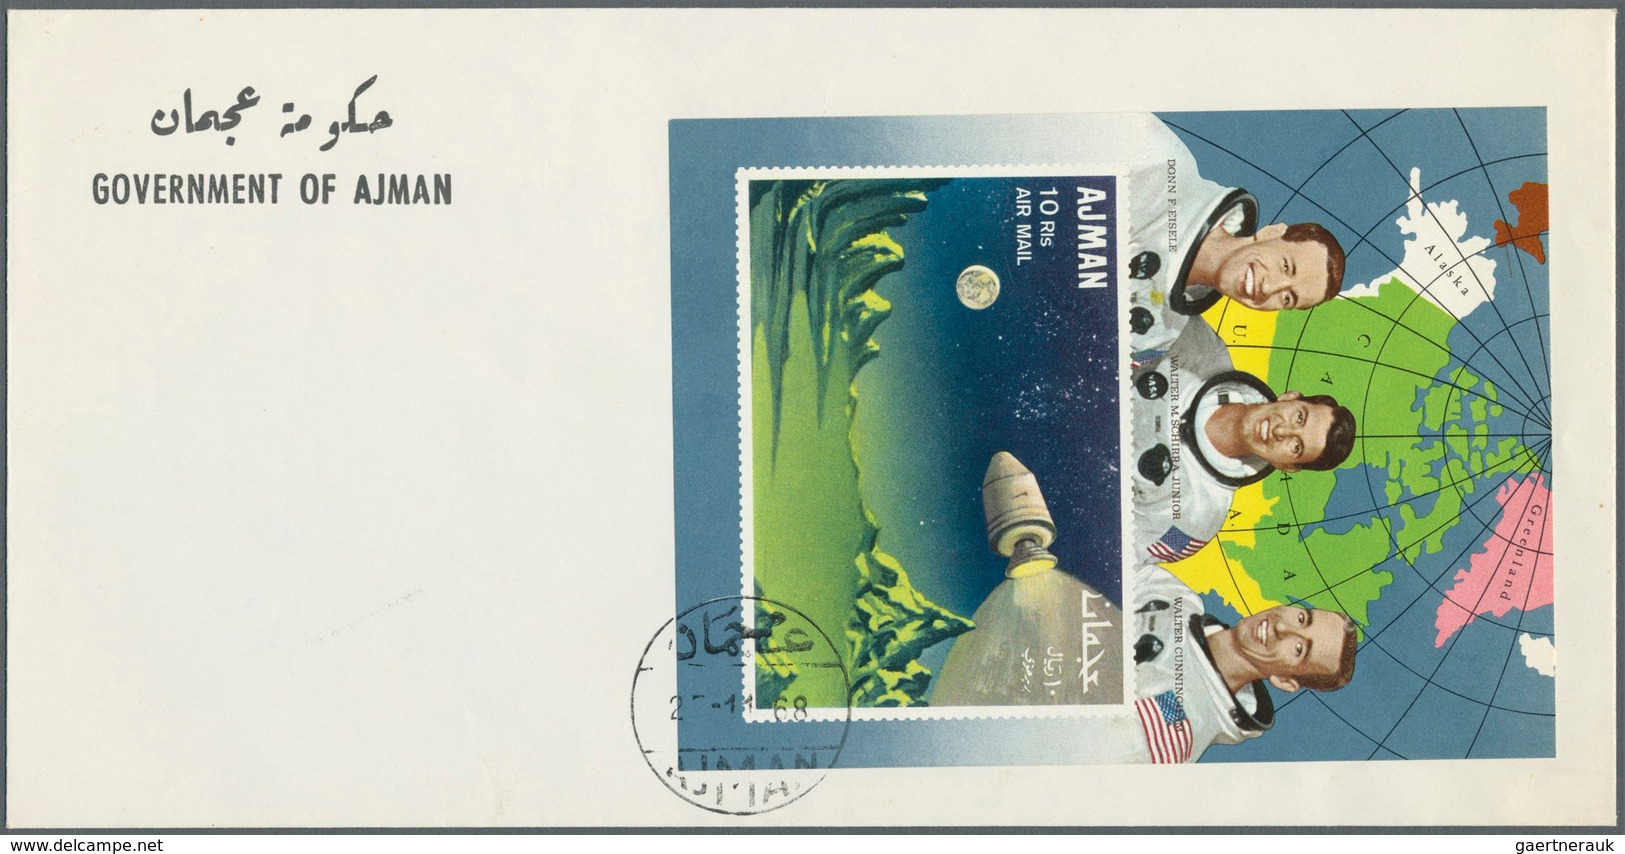 08013 Adschman / Ajman: 1968, Apollo 7, 5dh. to 15r., complete set each as de luxe sheets (coloured/illust